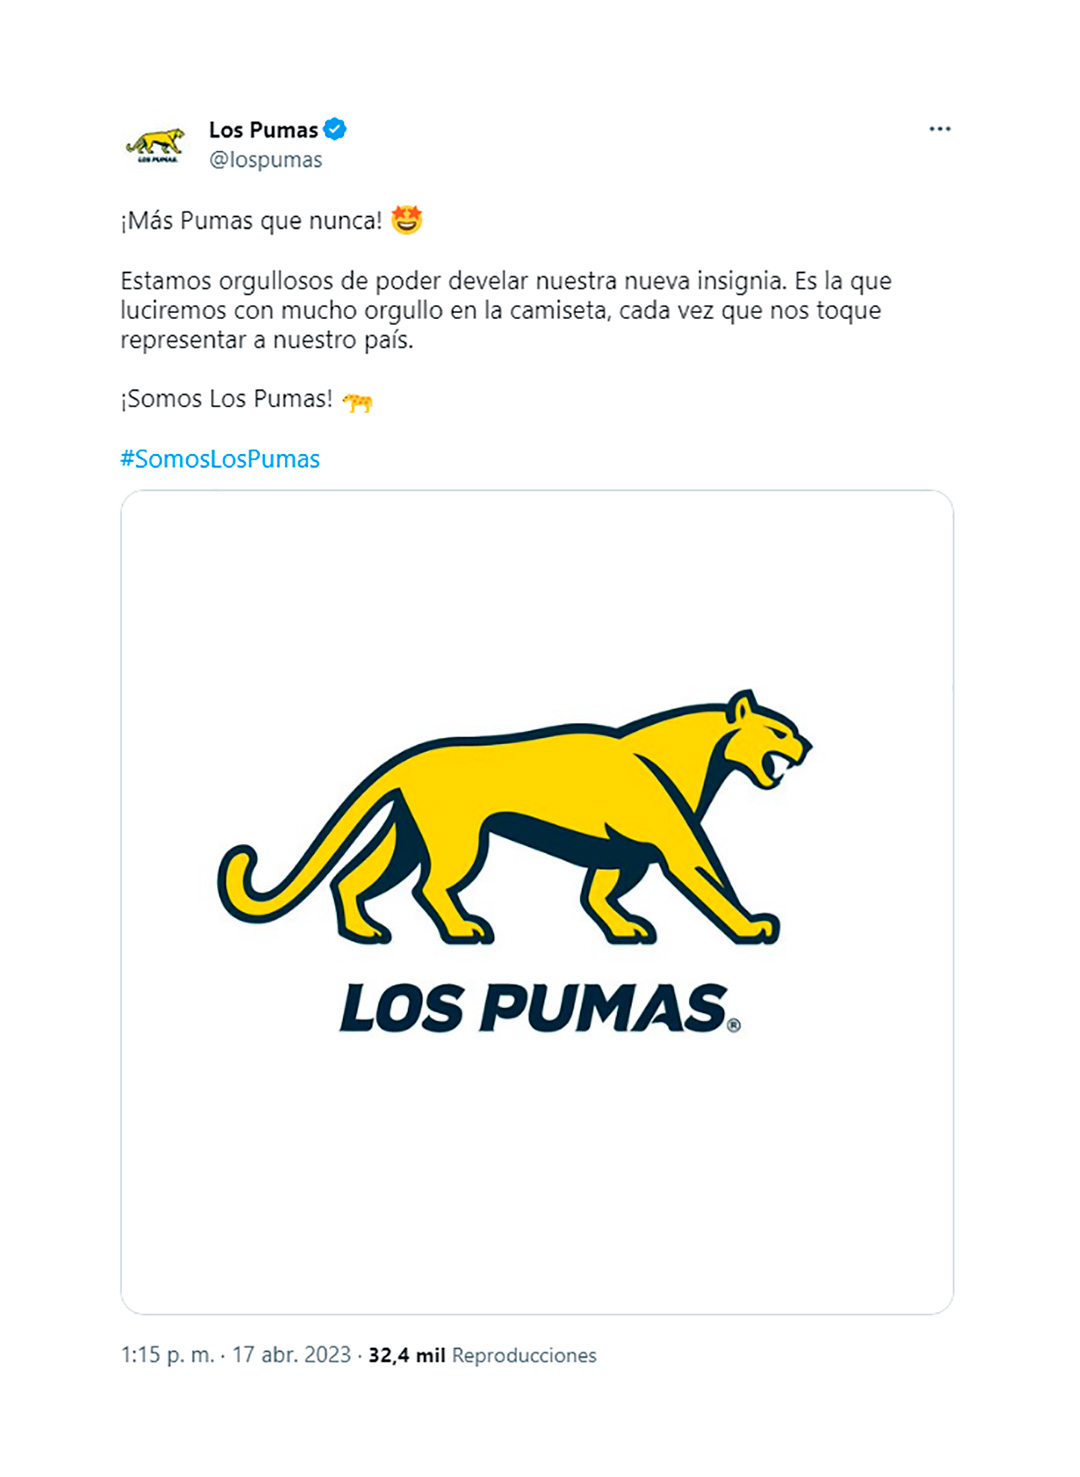 El nuevo logo que lucirán Los Pumas en su camiseta